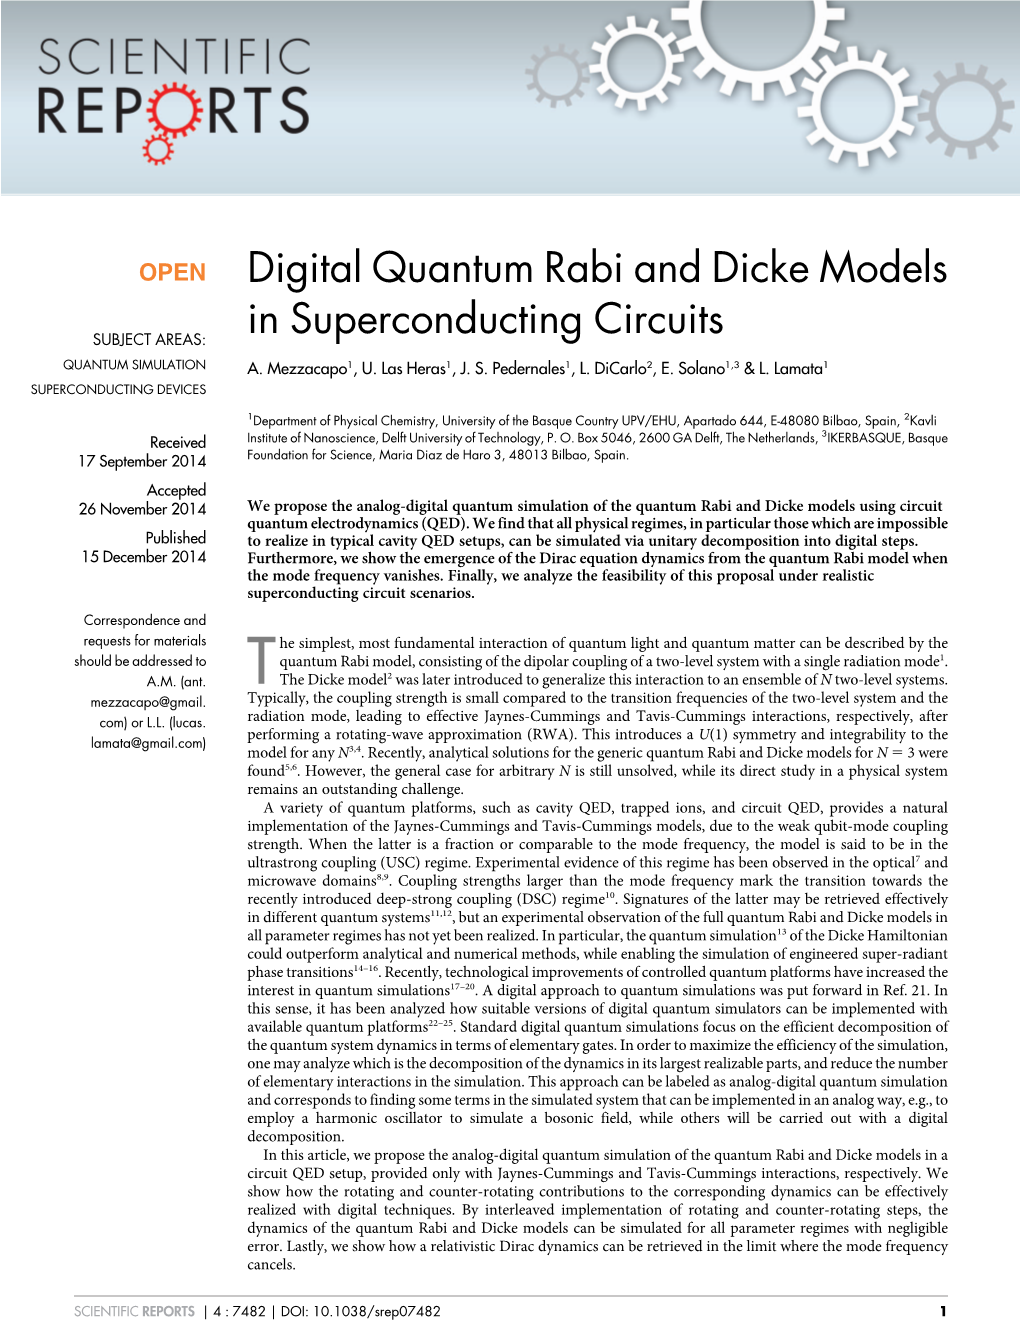 Digital Quantum Rabi and Dicke Models in Superconducting Circuits